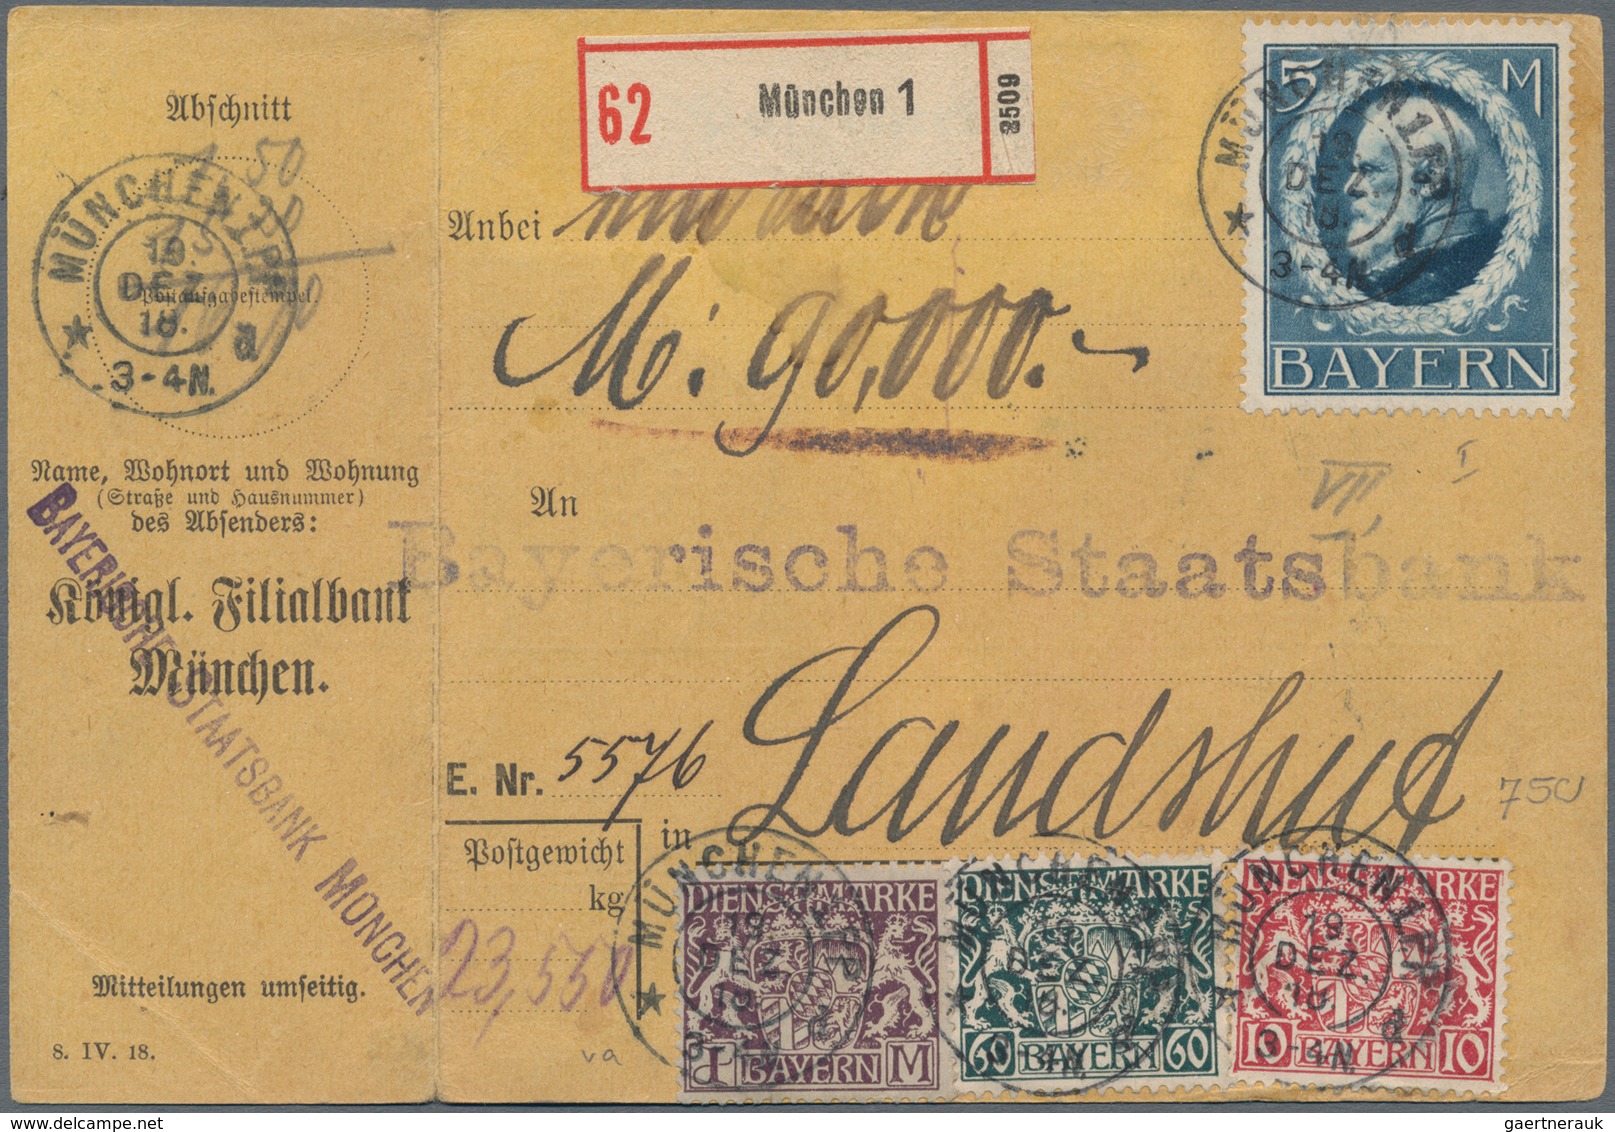 Bayern - Marken und Briefe: Bayern Pfennigzeit  1) 1890, 2 Mark gelborange auf rötlichem Papier als